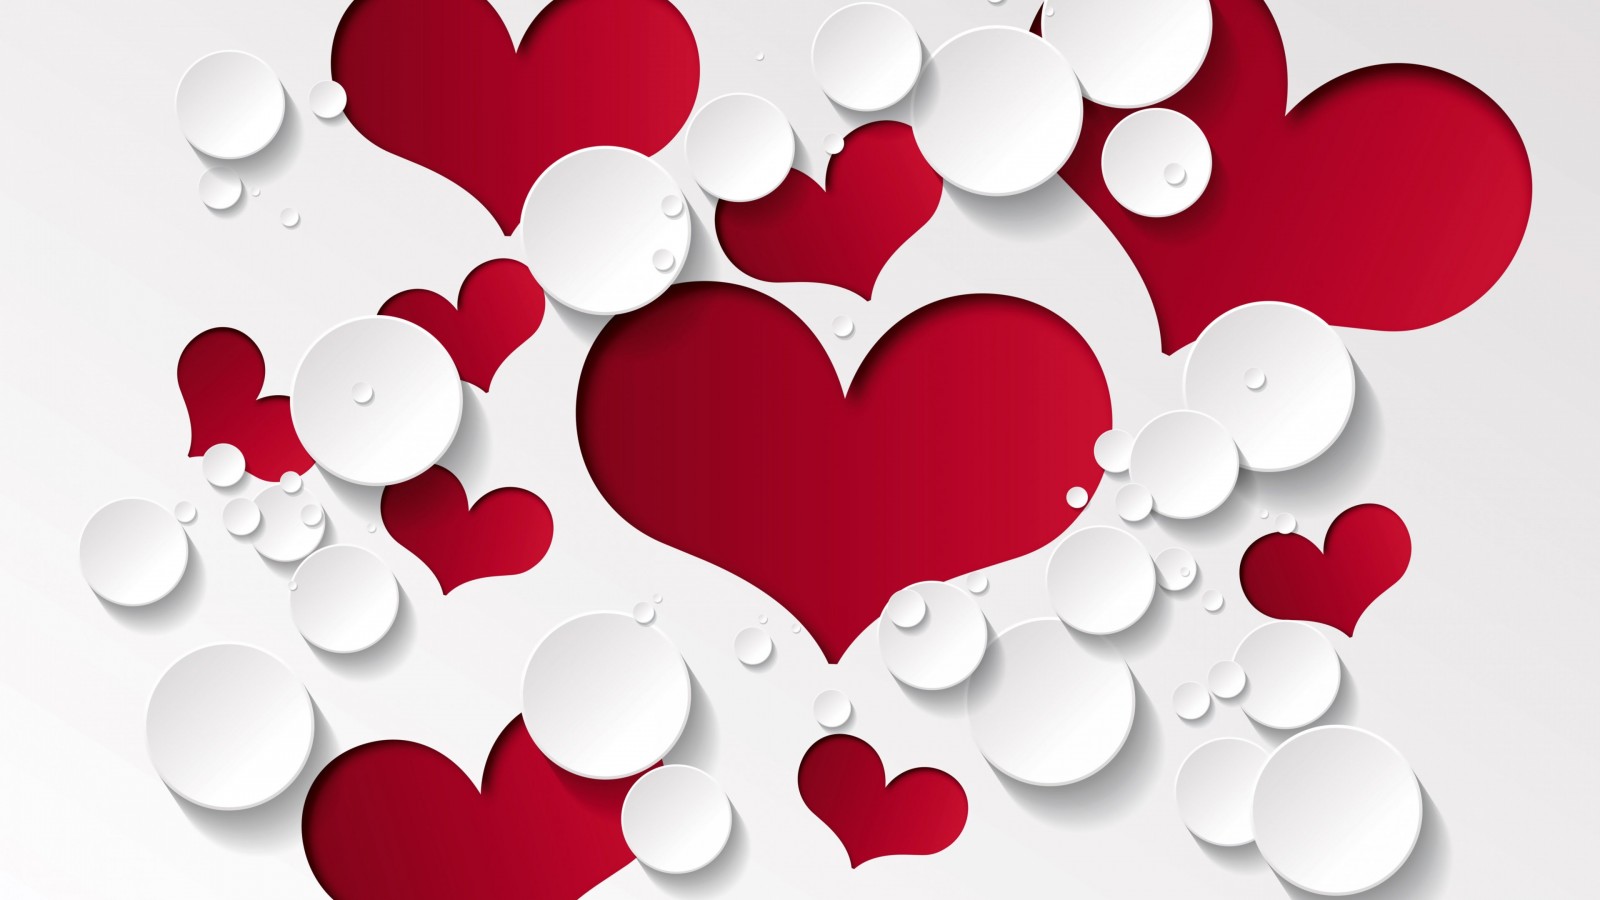 Love Heart Shaped Pattern Wallpaper for Desktop 1600x900